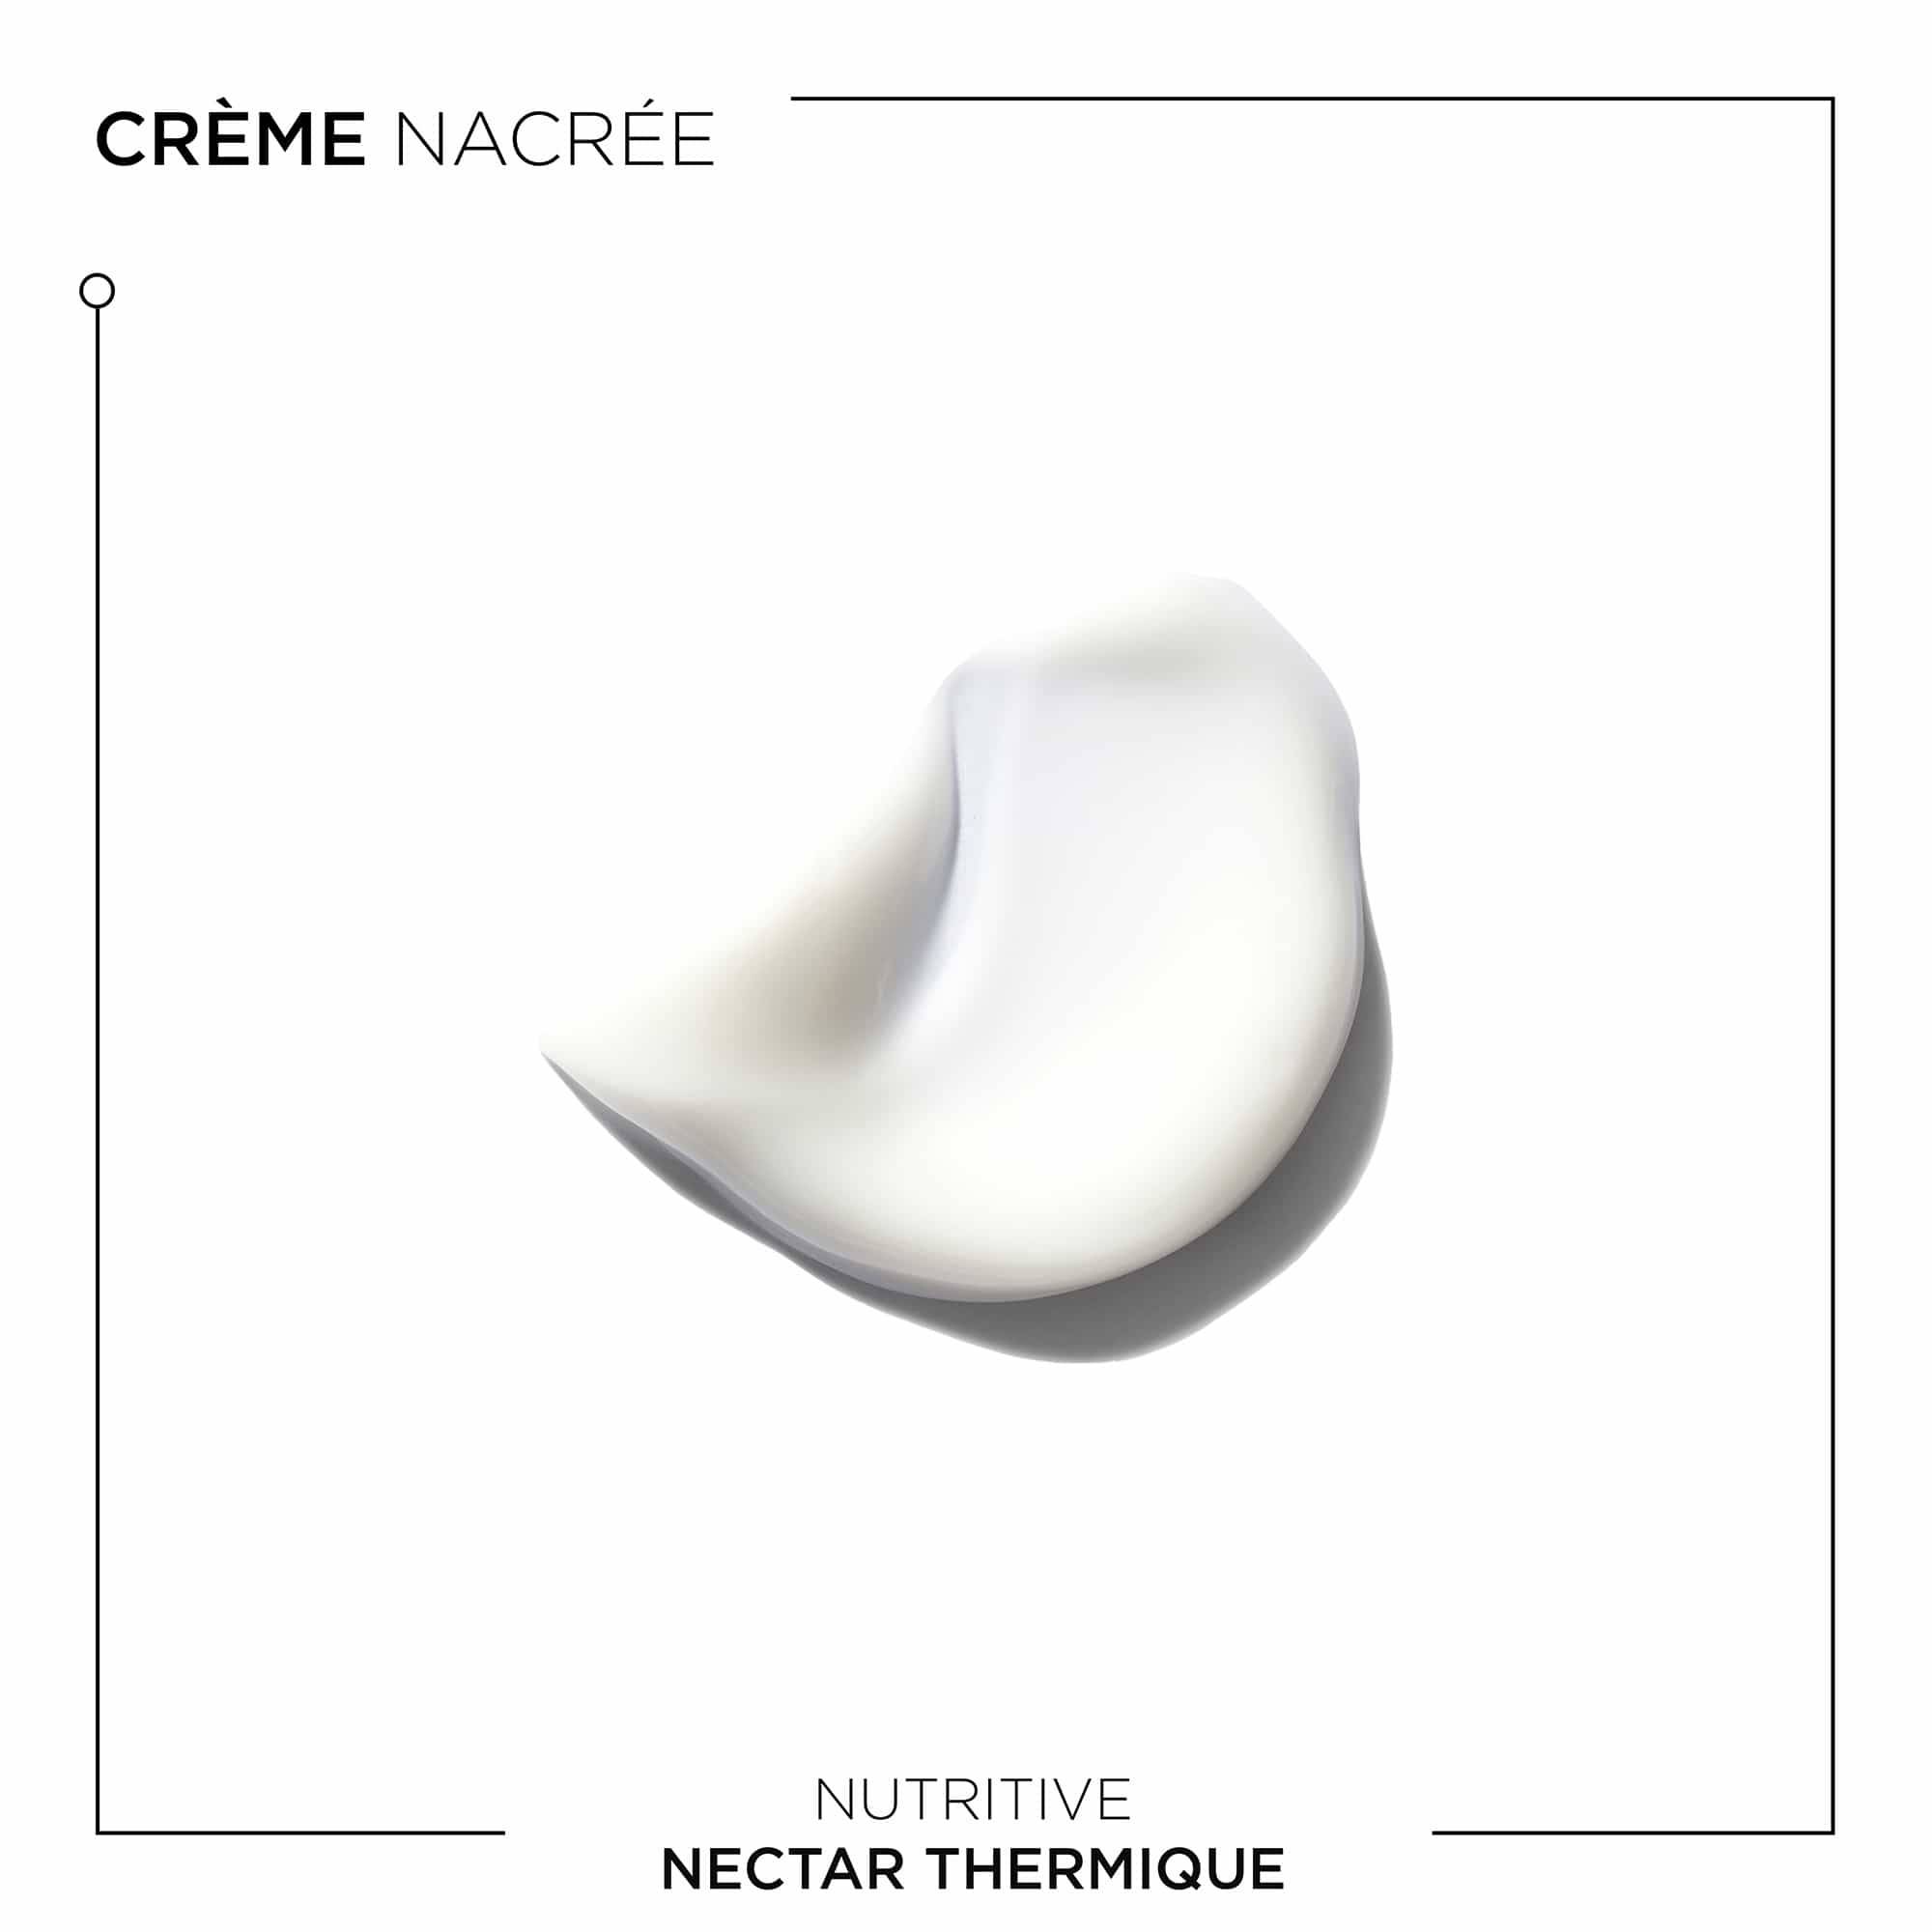 Nectar thermique Nutritive de la marque Kerastase Contenance 150ml - 2